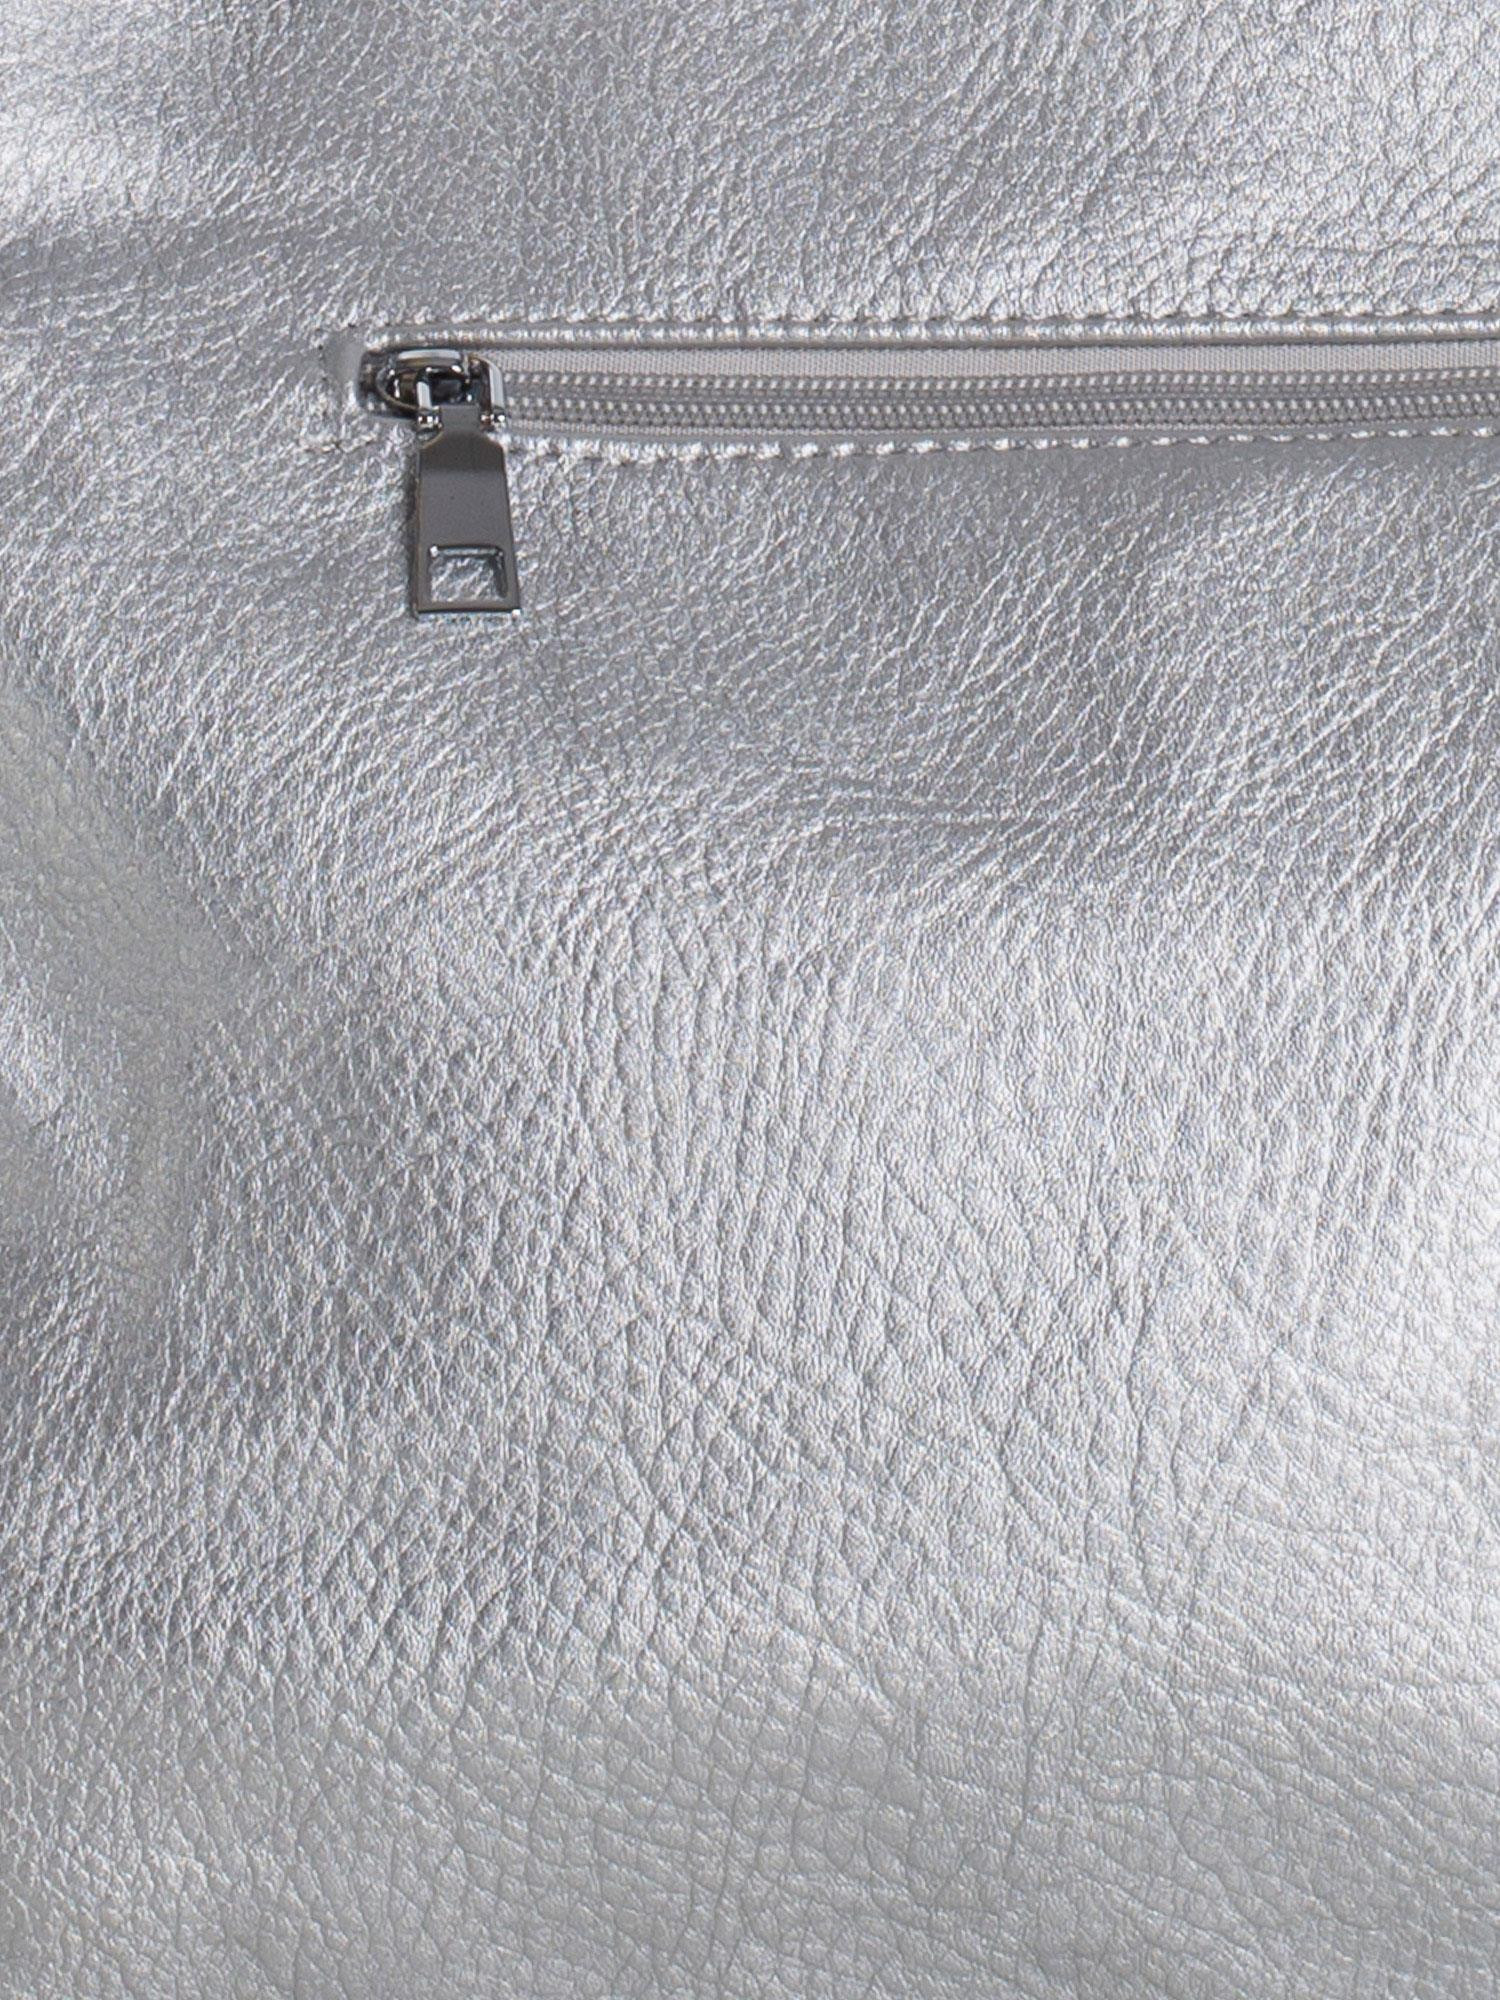 Dámská kabelka OW TR model 17724100 stříbrné - FPrice Velikost: jedna velikost